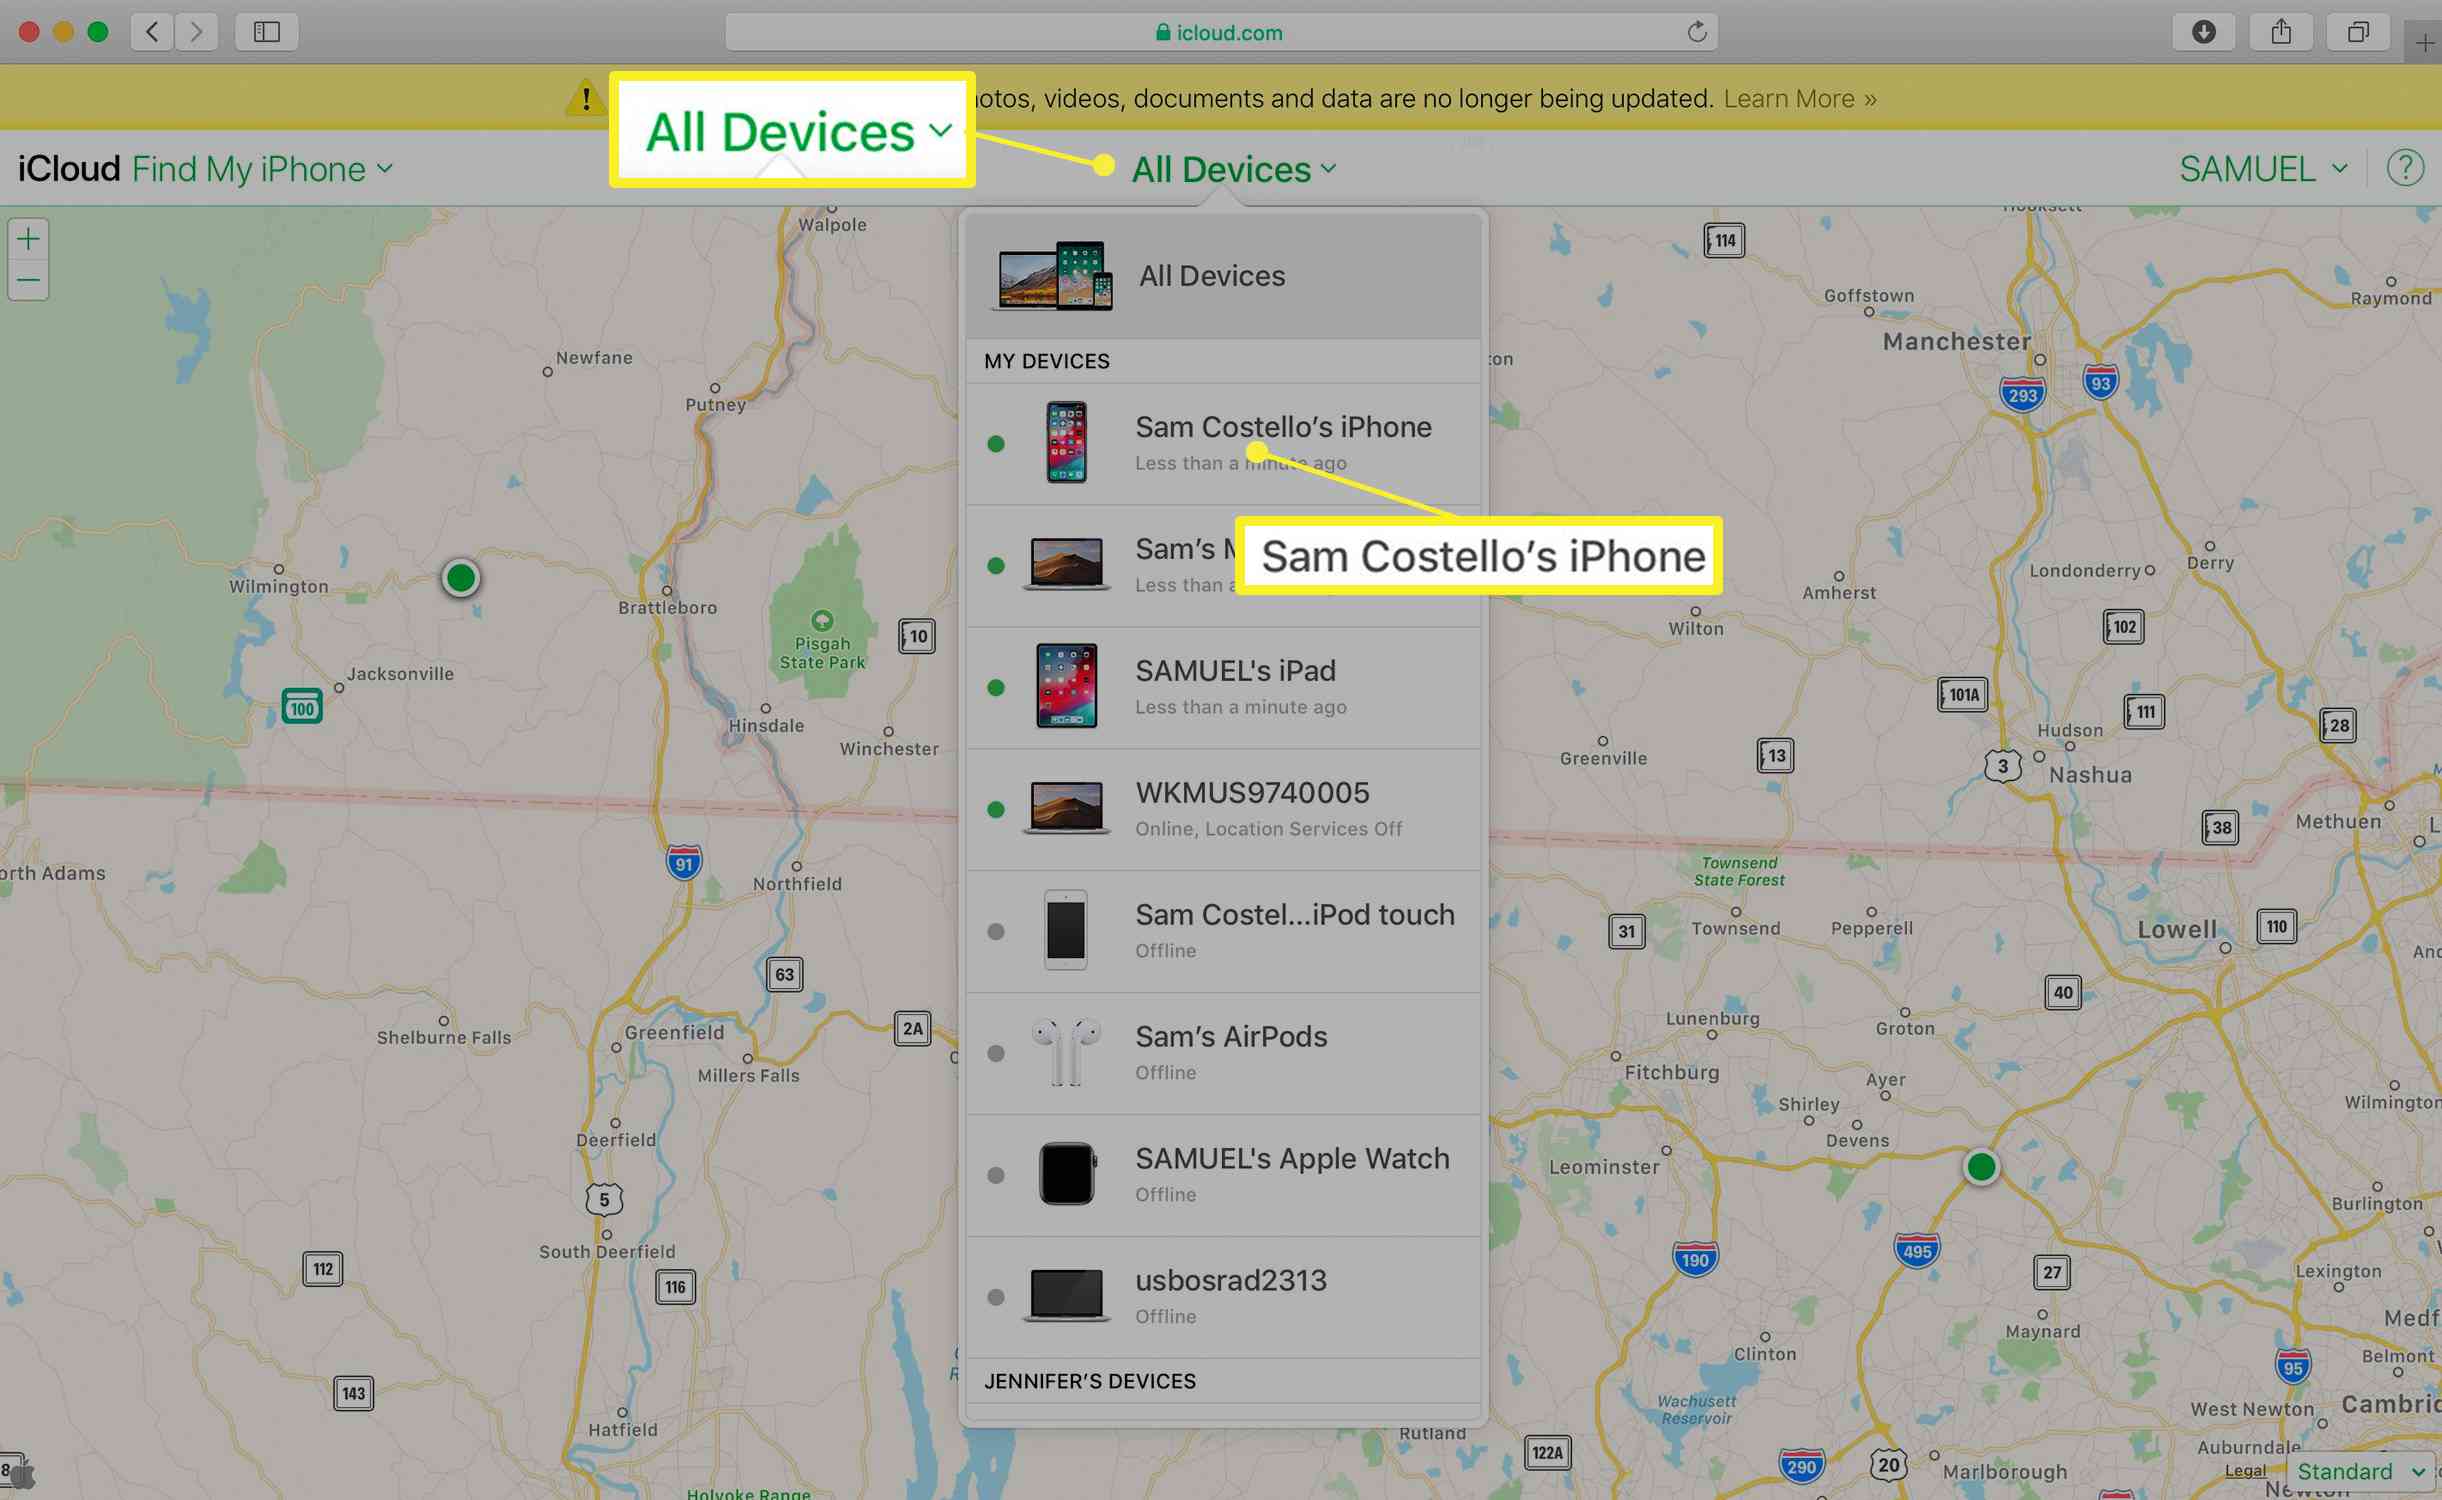 Selectie van een apparaat in Zoek mijn iPhone bij iCloud